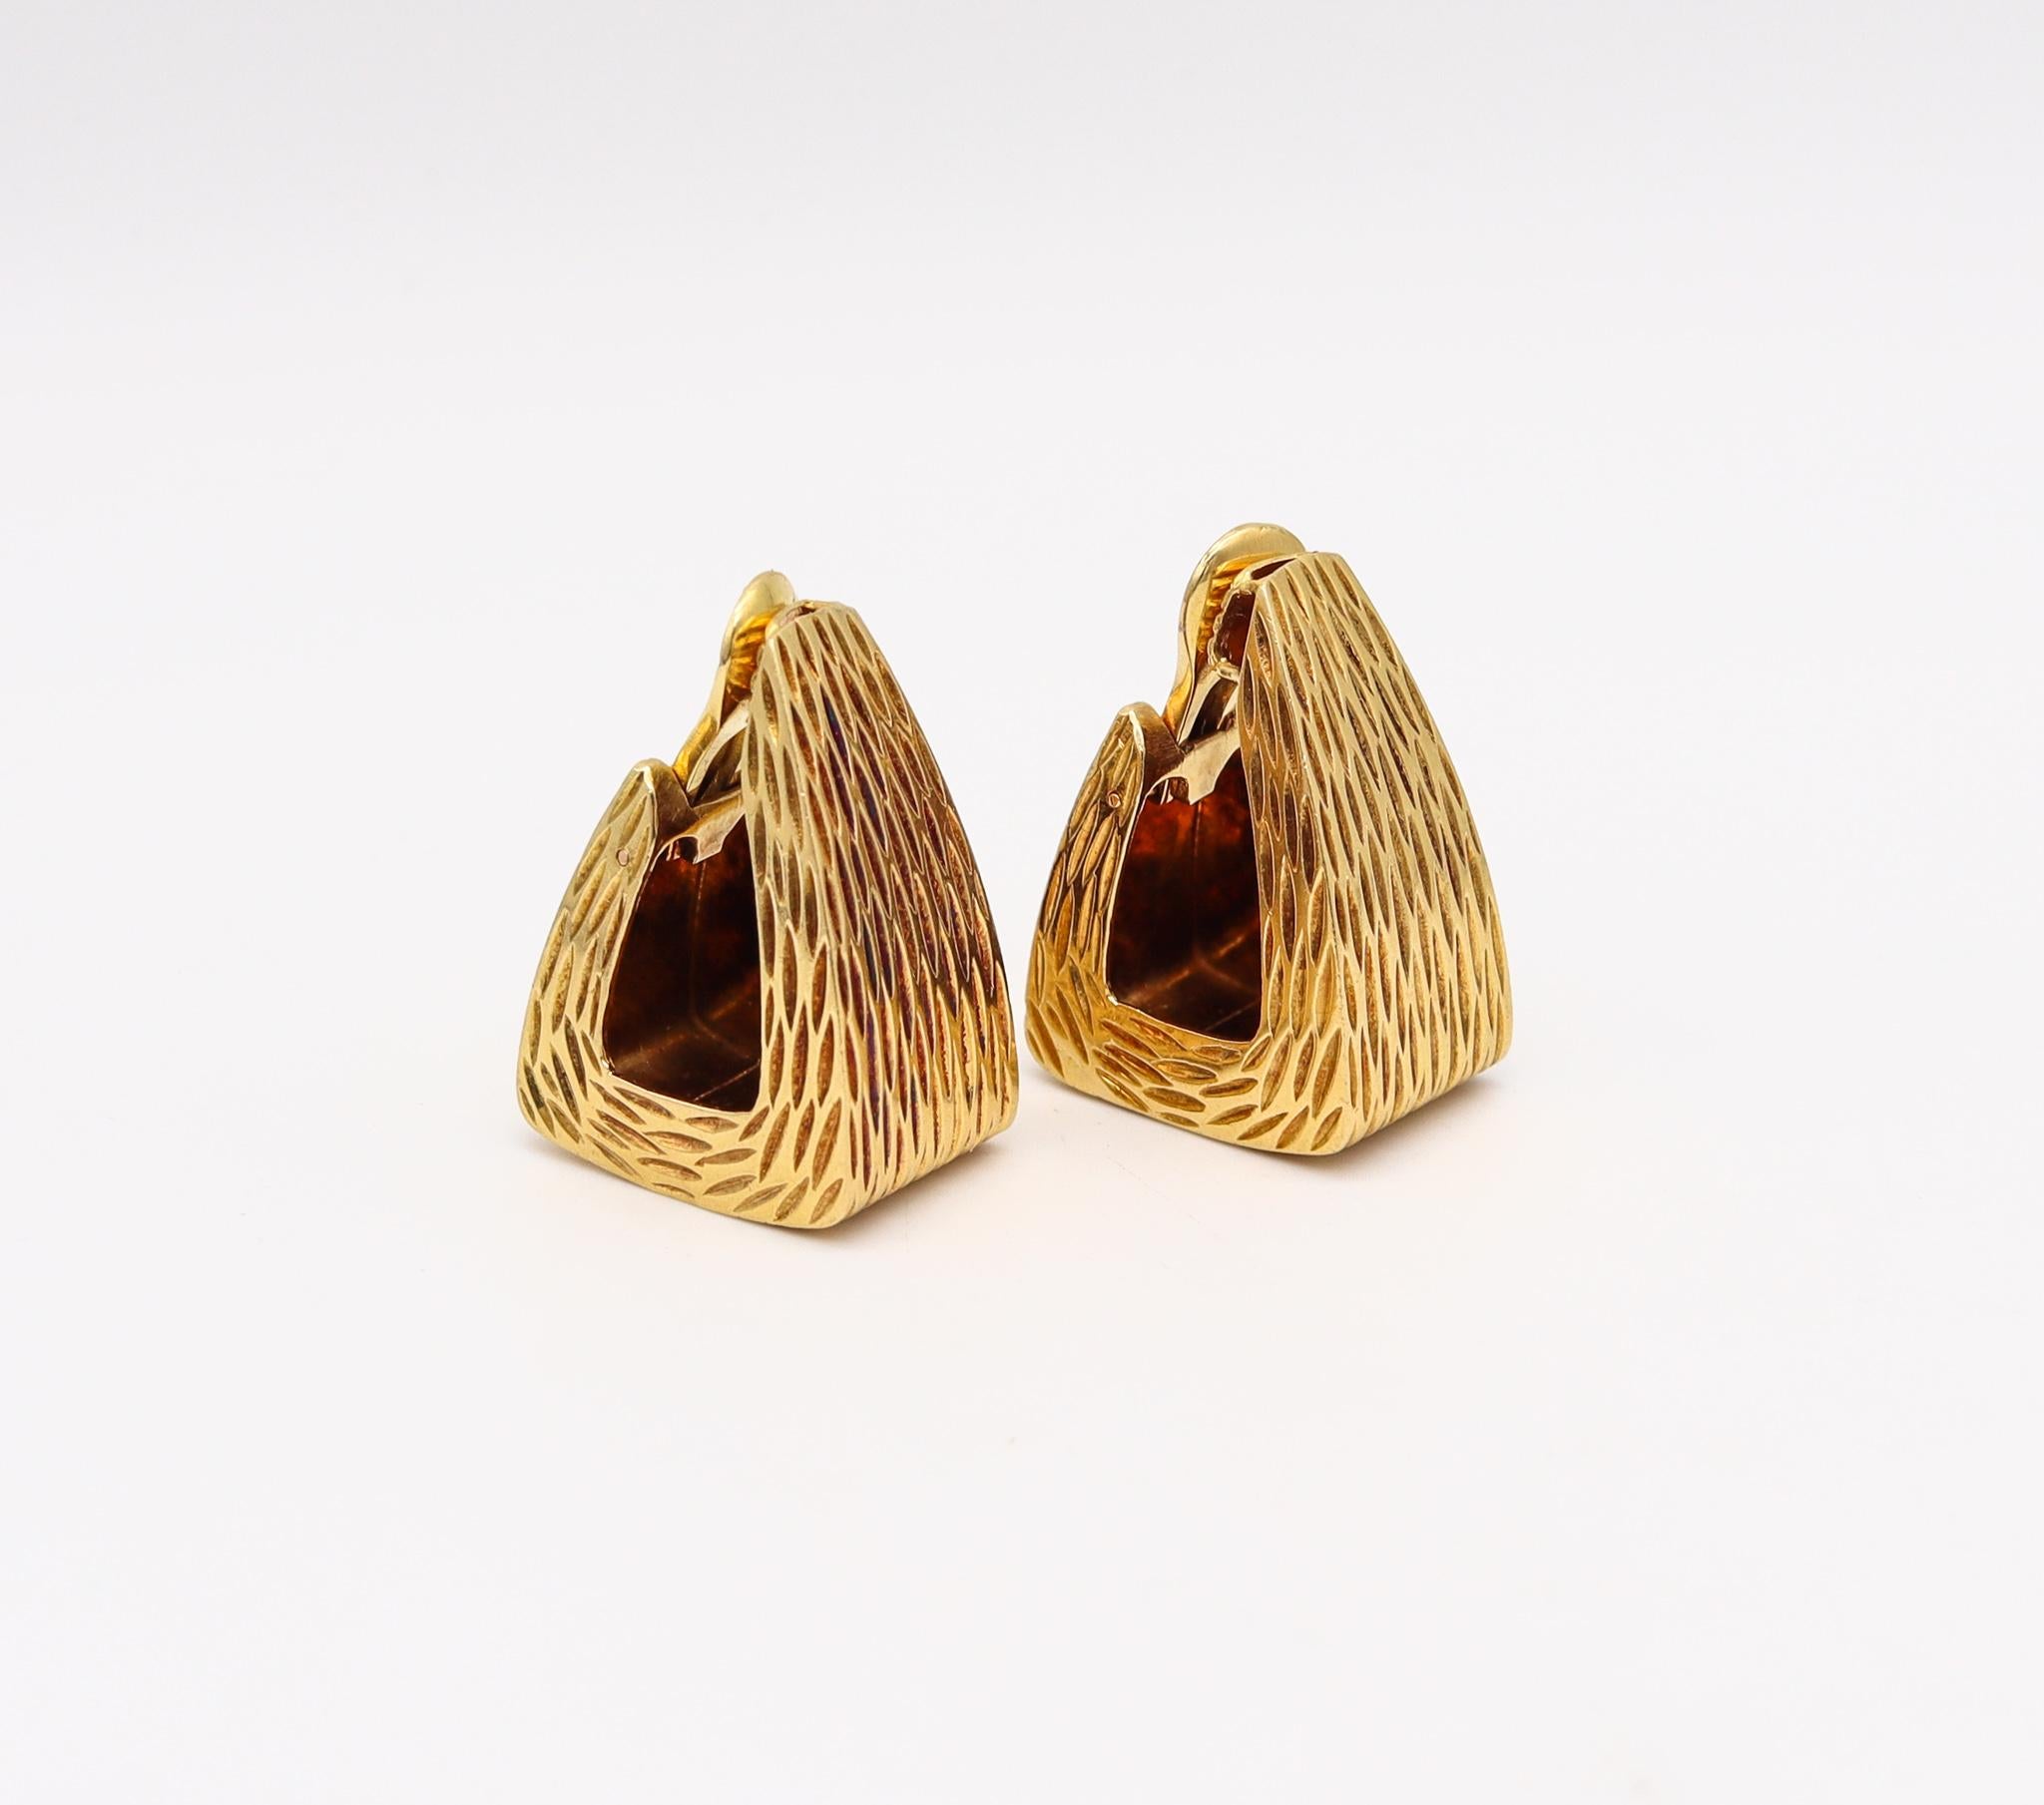 Statement-Ohrringe, entworfen von Robert Wander.

Schönes, kühnes Paar, das in den 1960er Jahren im Atelier von Robert Wander für Wander France entworfen wurde. Diese wunderschönen Ohrringe wurden mit scharfen geometrischen Mustern aus massivem